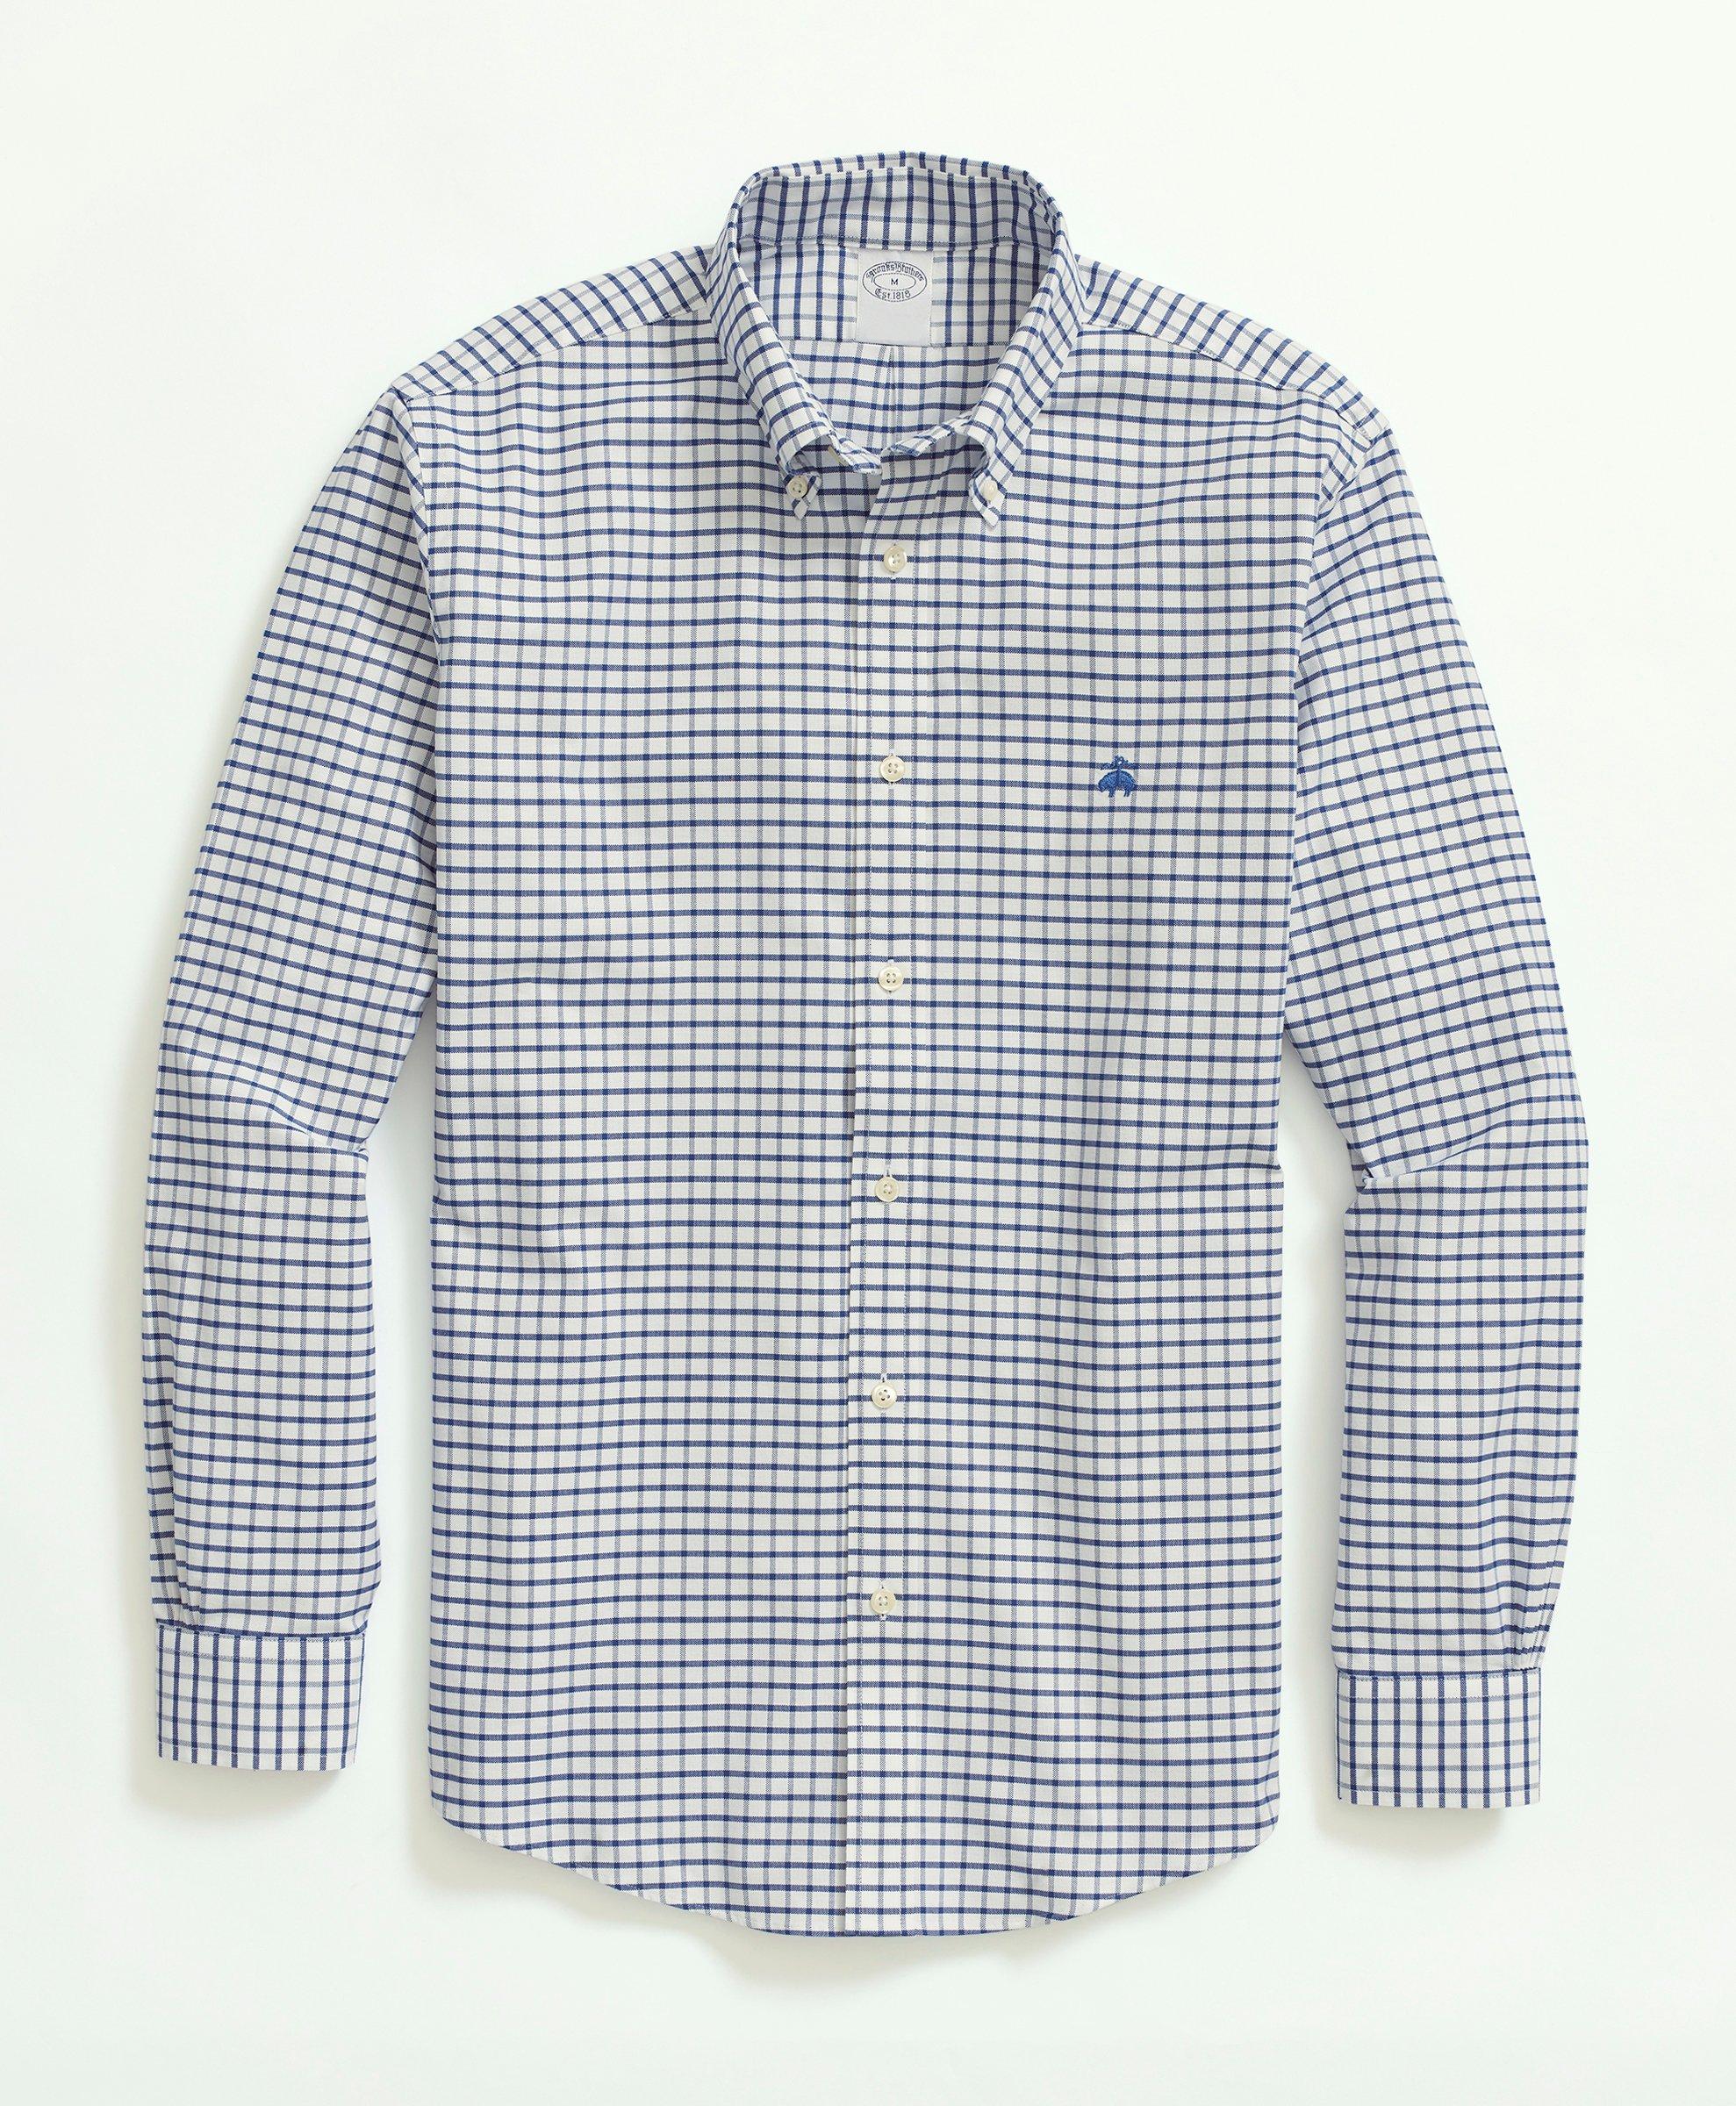 Non-Iron Oxford Button-Down Collar Sport Shirt, image 1